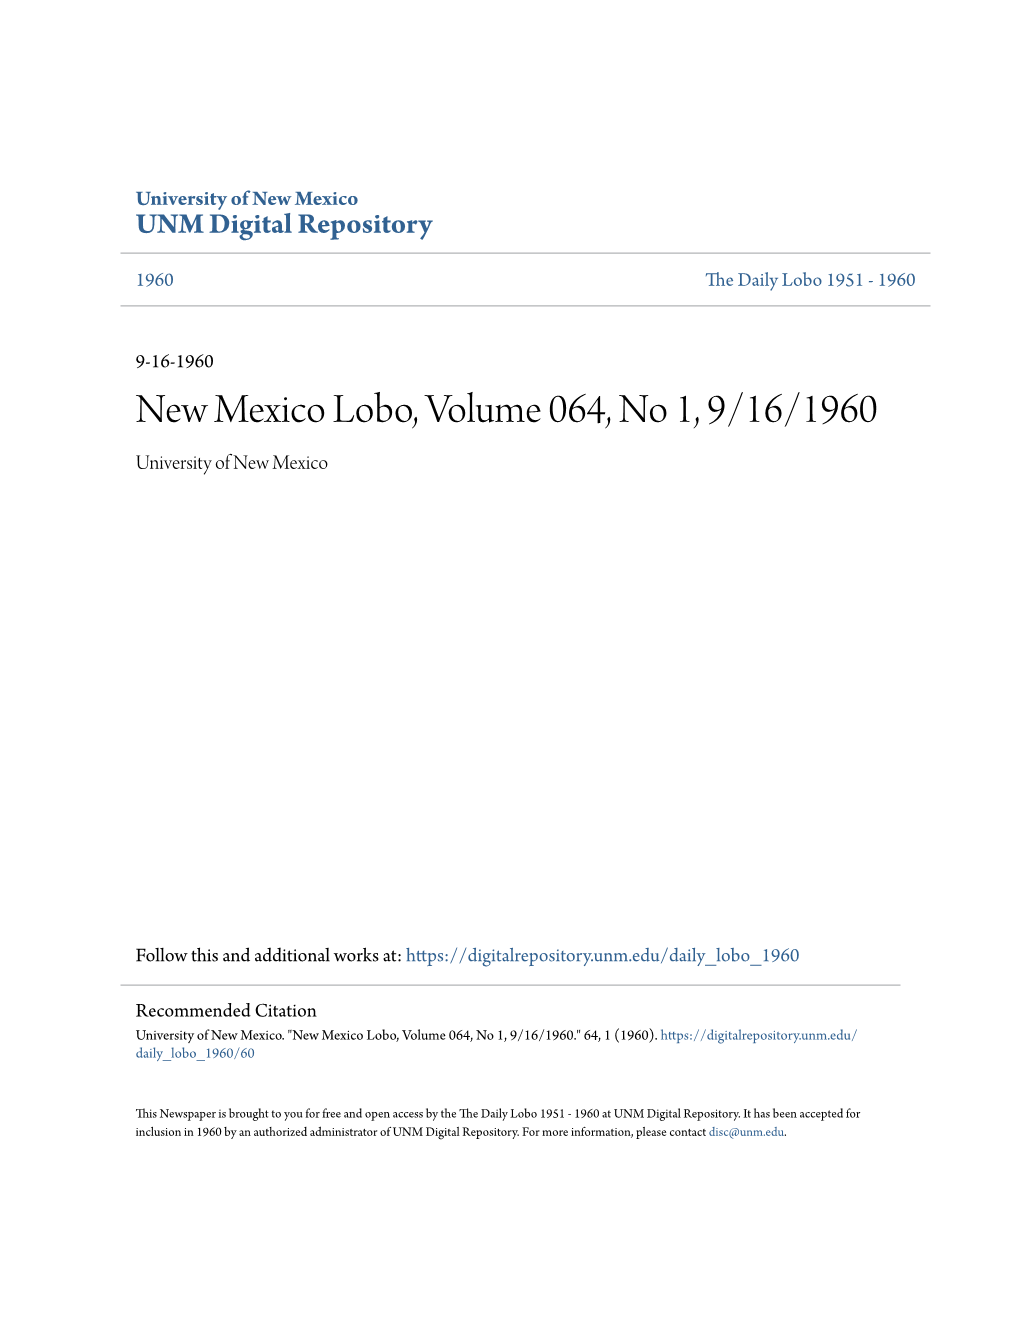 New Mexico Lobo, Volume 064, No 1, 9/16/1960 University of New Mexico